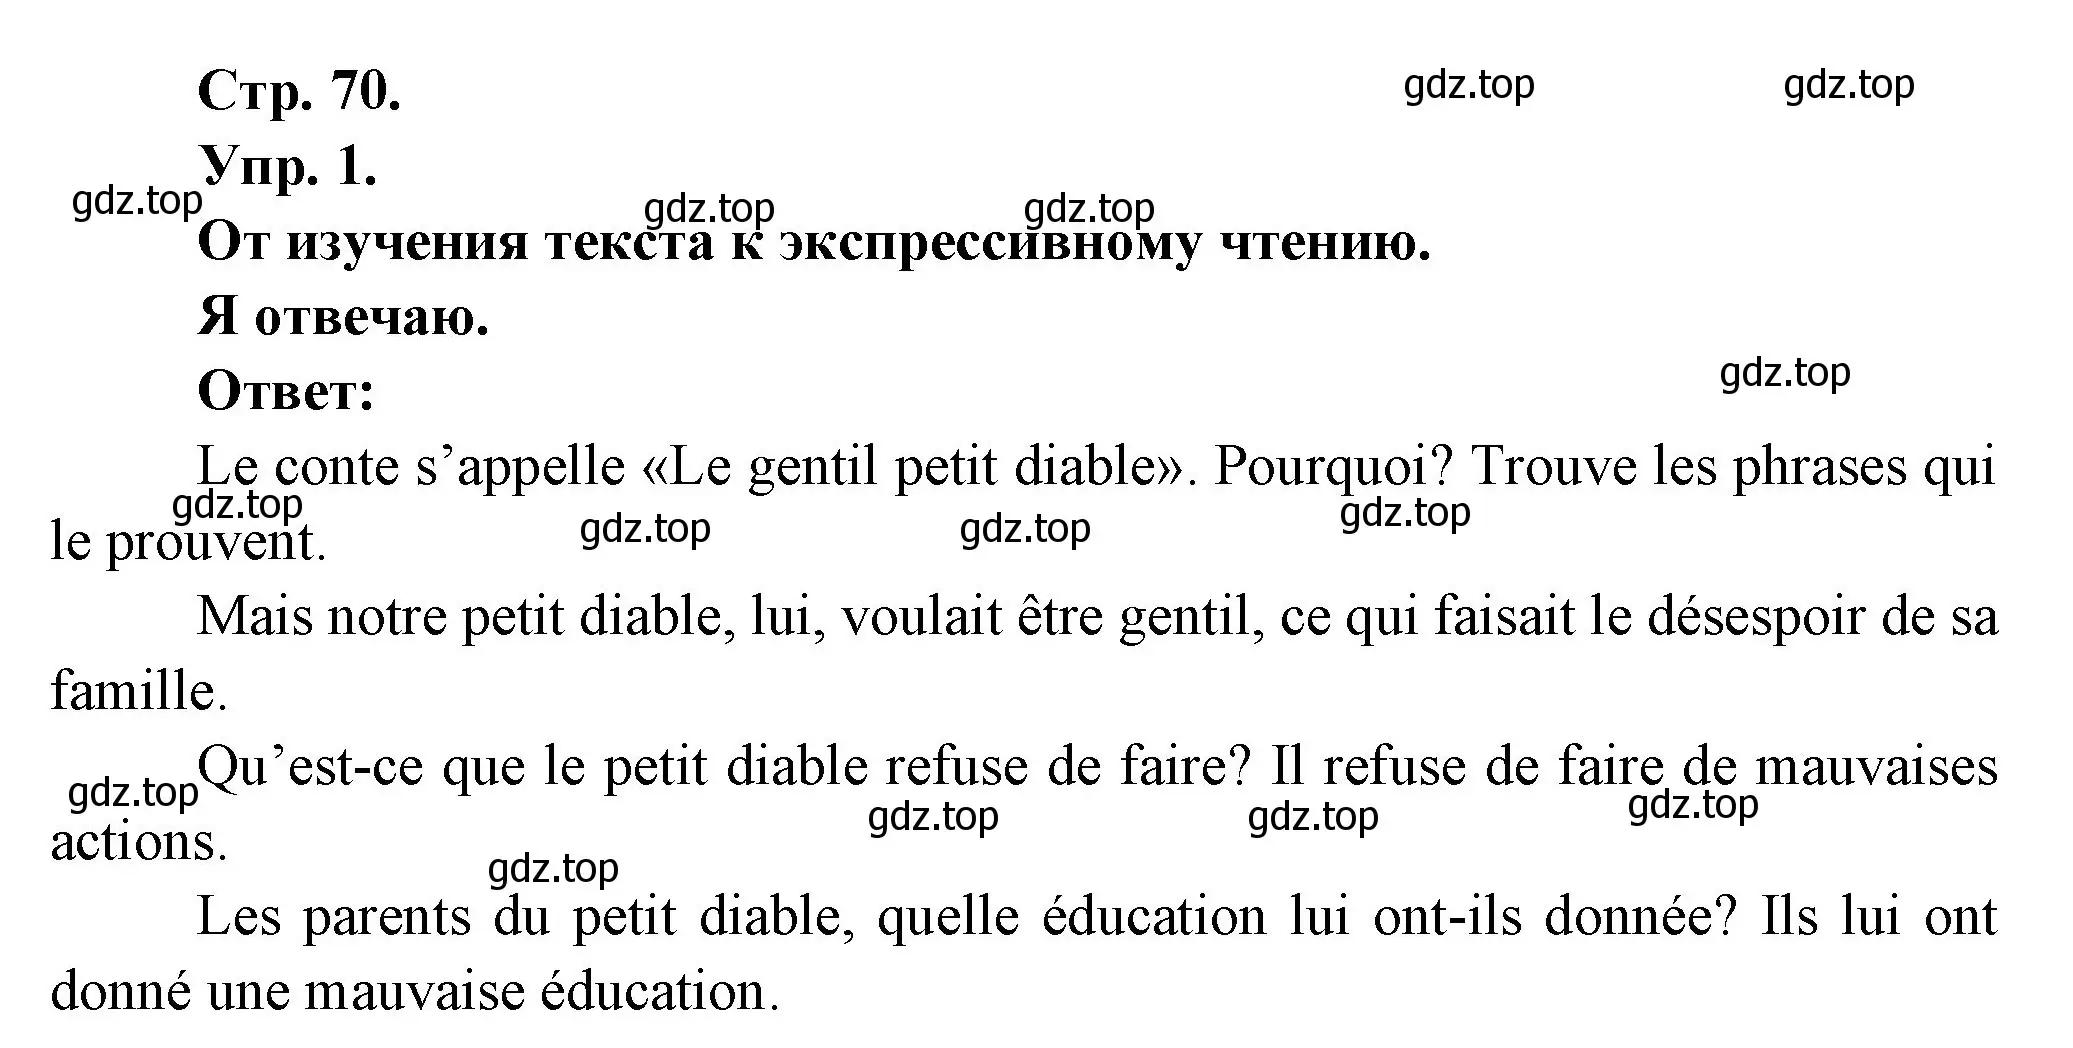 Решение номер 1 (страница 70) гдз по французскому языку 6 класс Кулигина, Щепилова, учебник